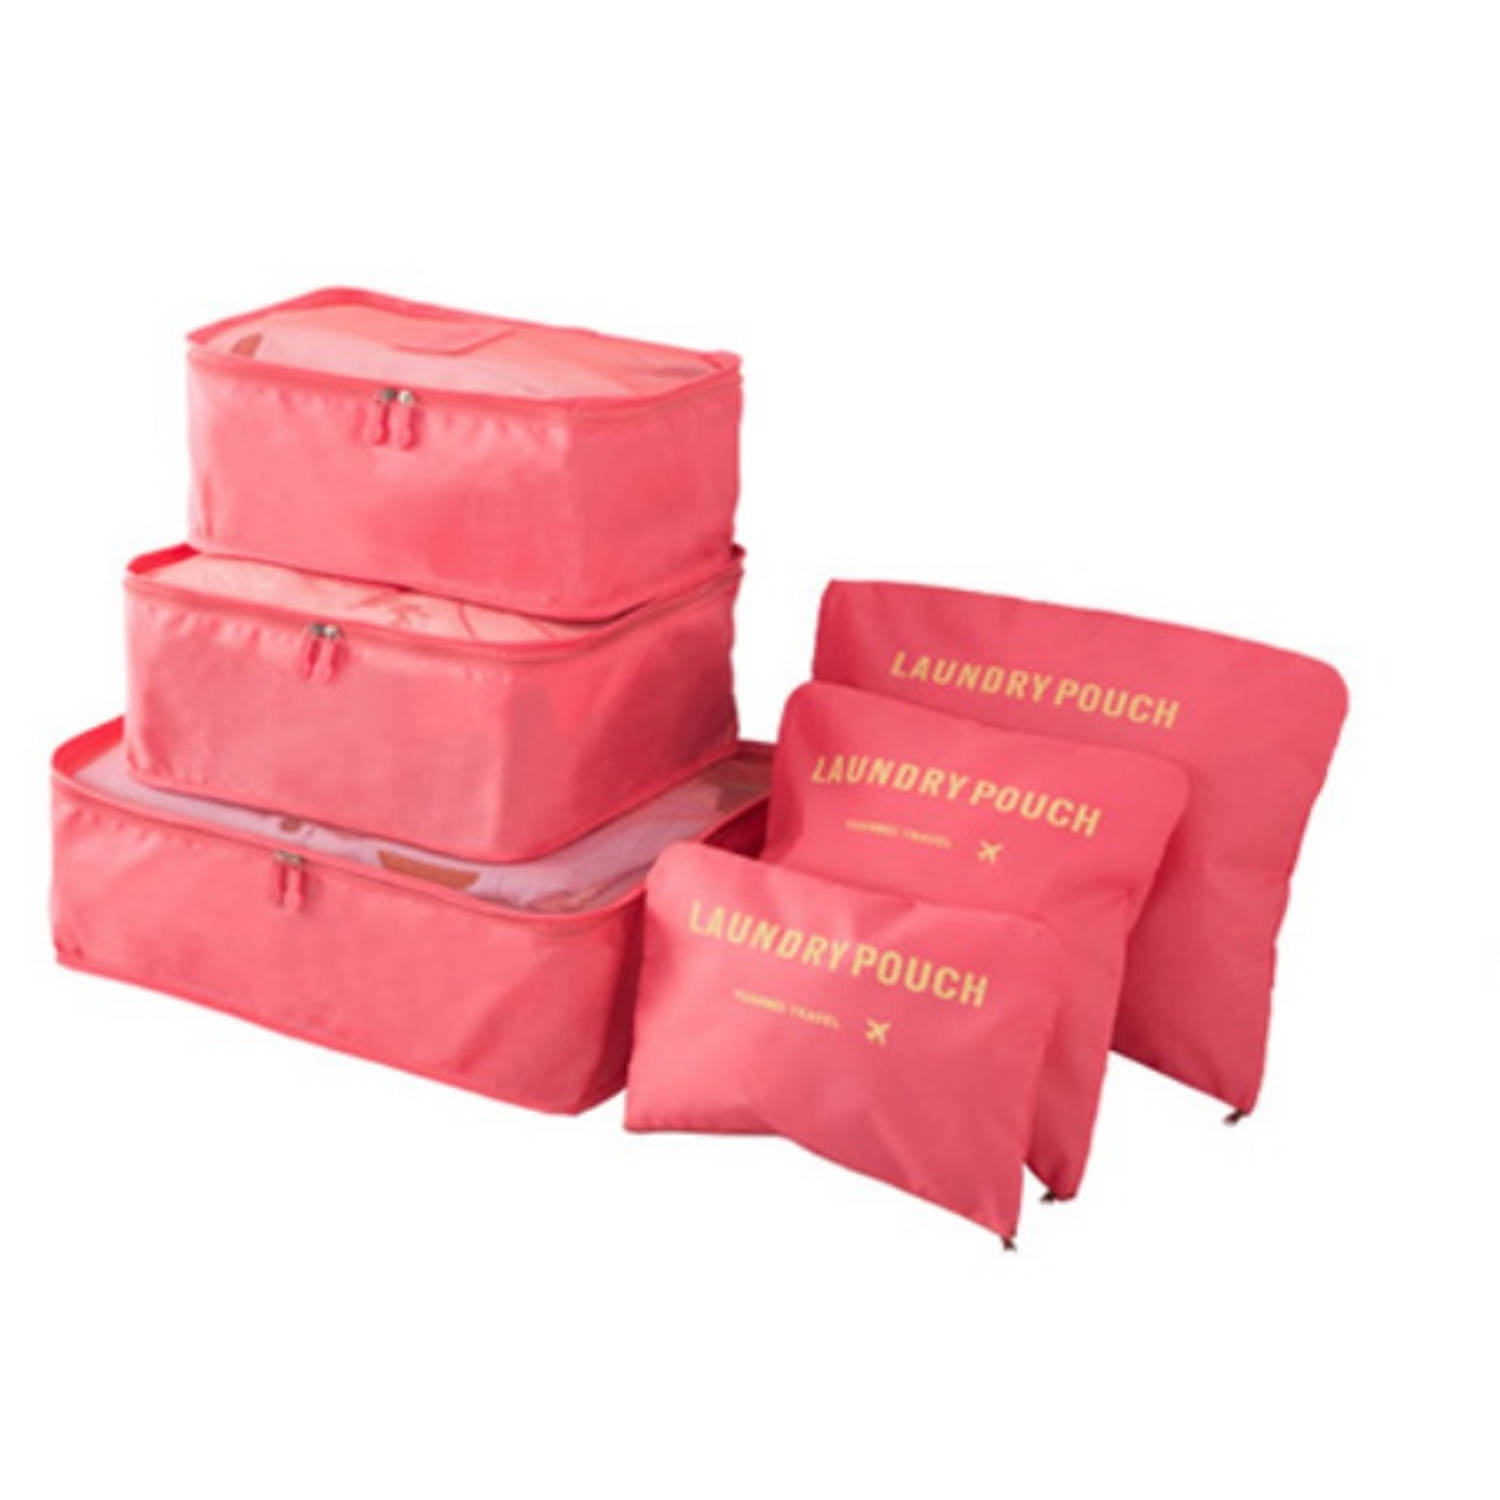 Packing Cubes - 6 stuks - Koffer Organiser - Watermeloen - Je koffer georganiseerd ingepakt